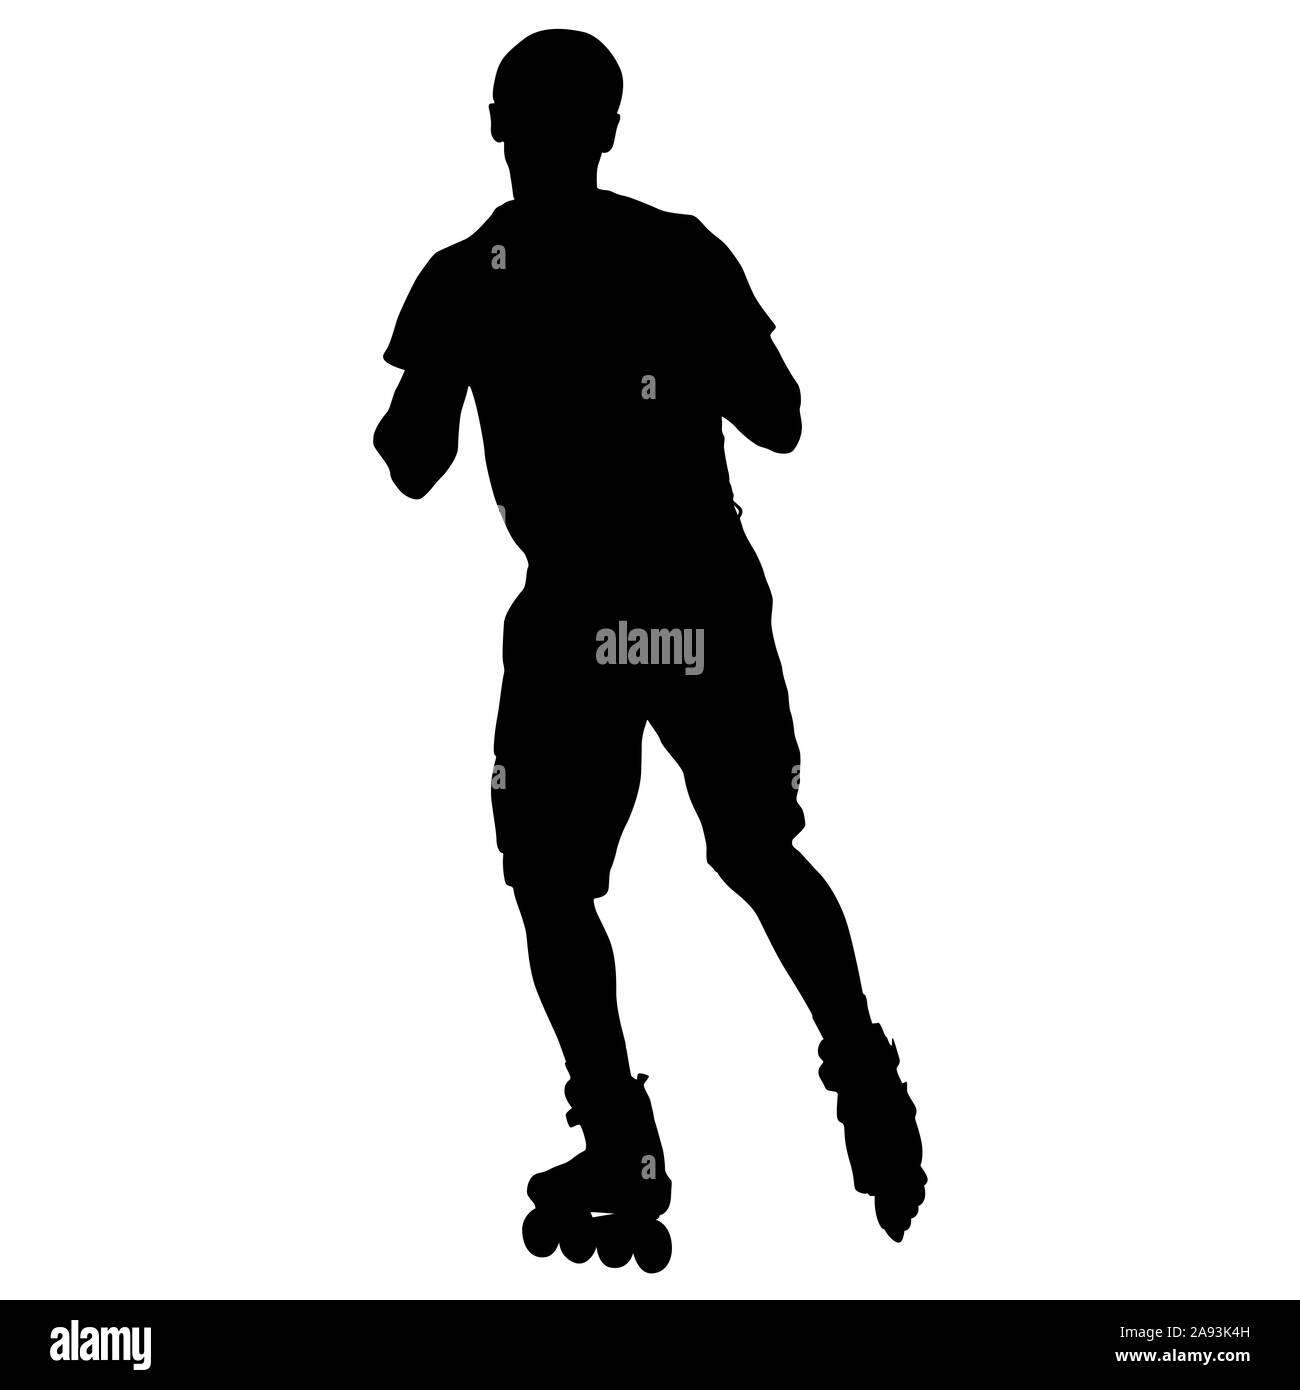 Schwarze Silhouette eines Athleten auf Rollschuhen auf einem weißen Hintergrund. Stockfoto